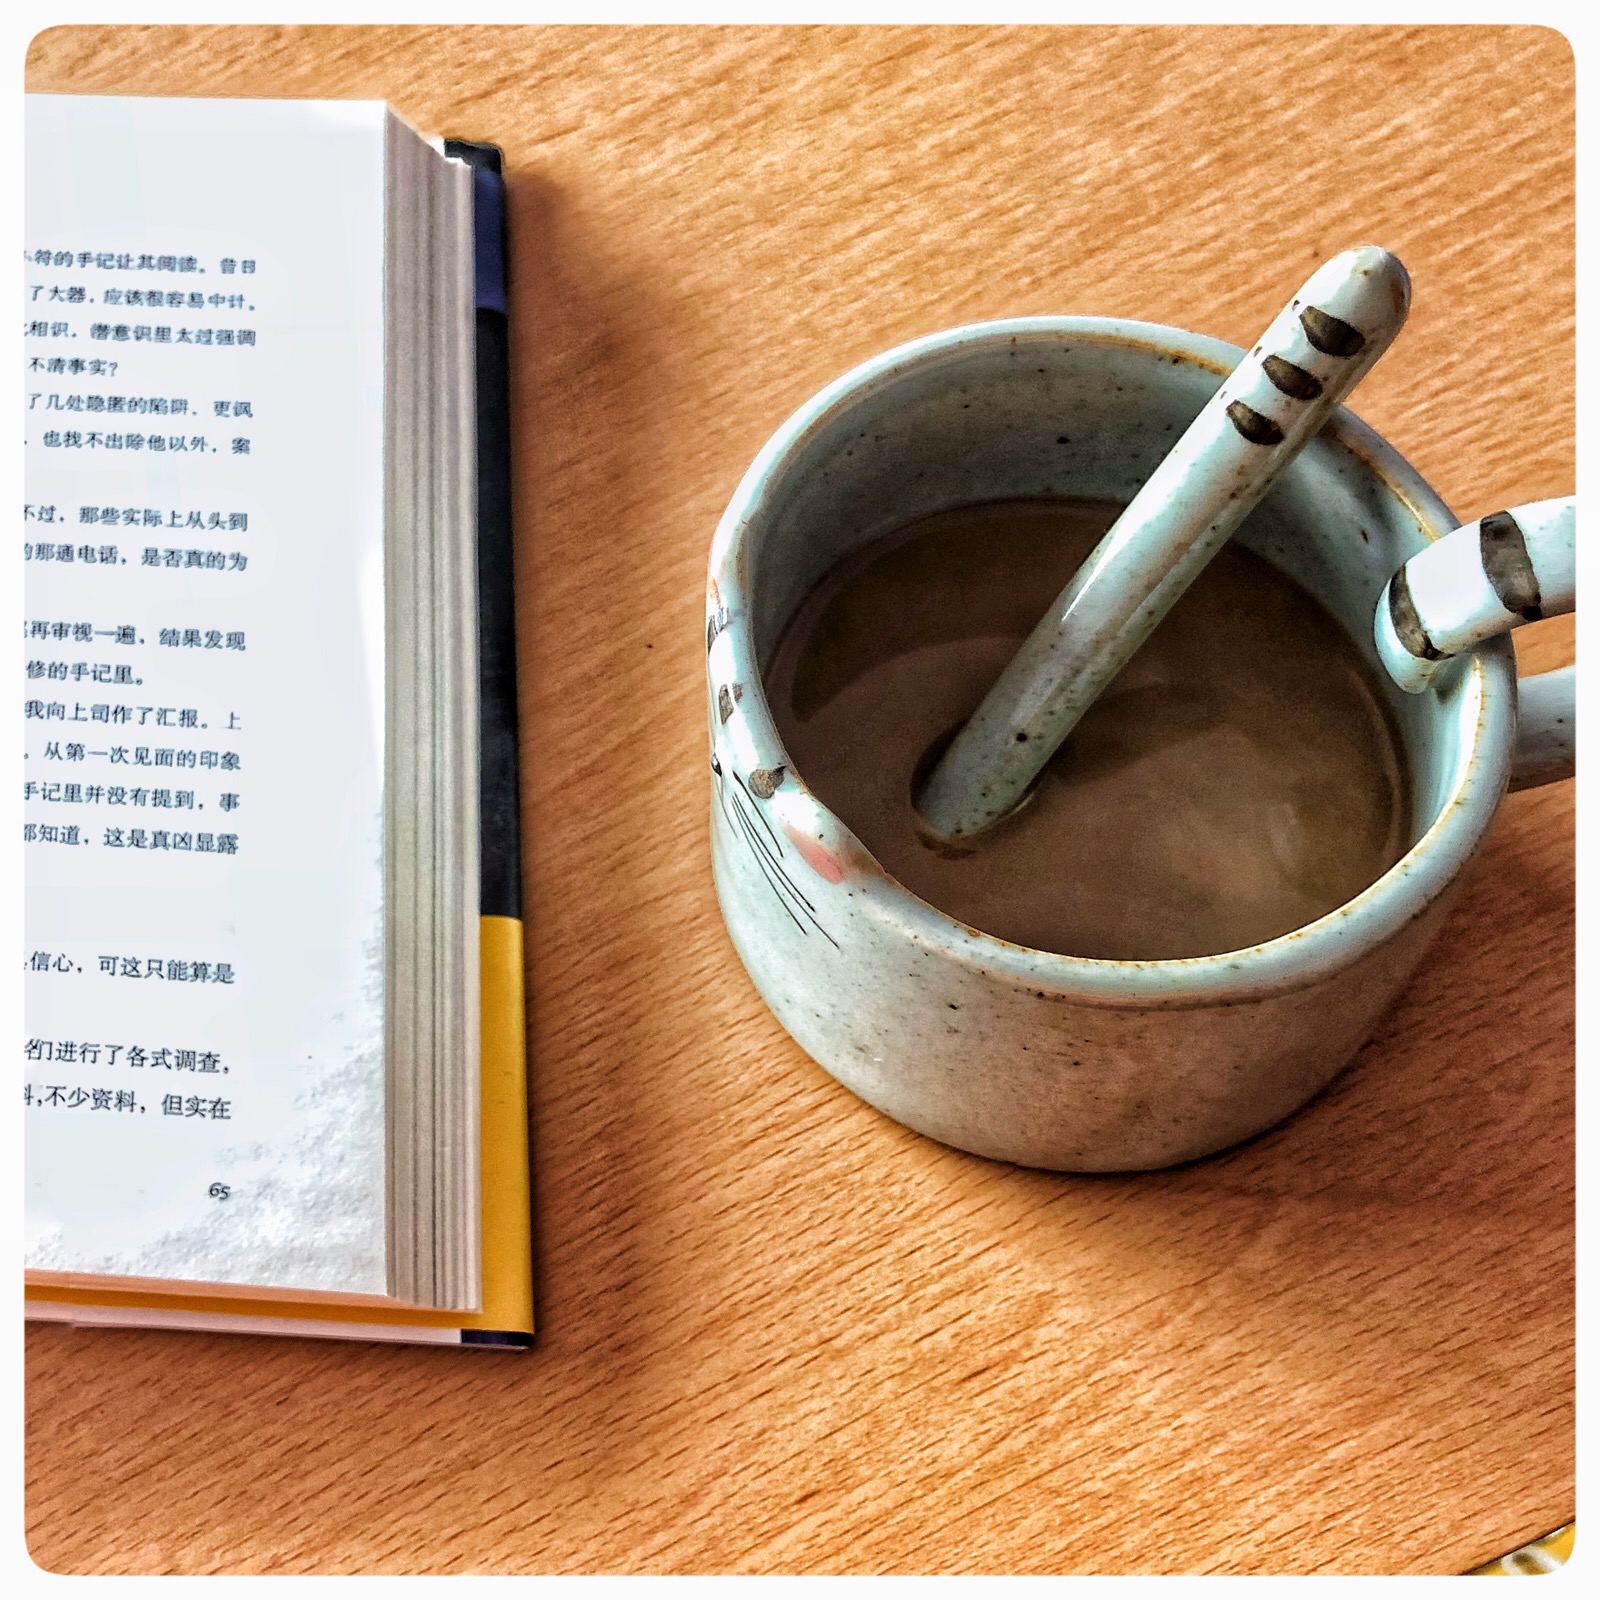 翻开的书籍与一杯咖啡悦读时光图片 - 免费可商用图片 - CC0素材网